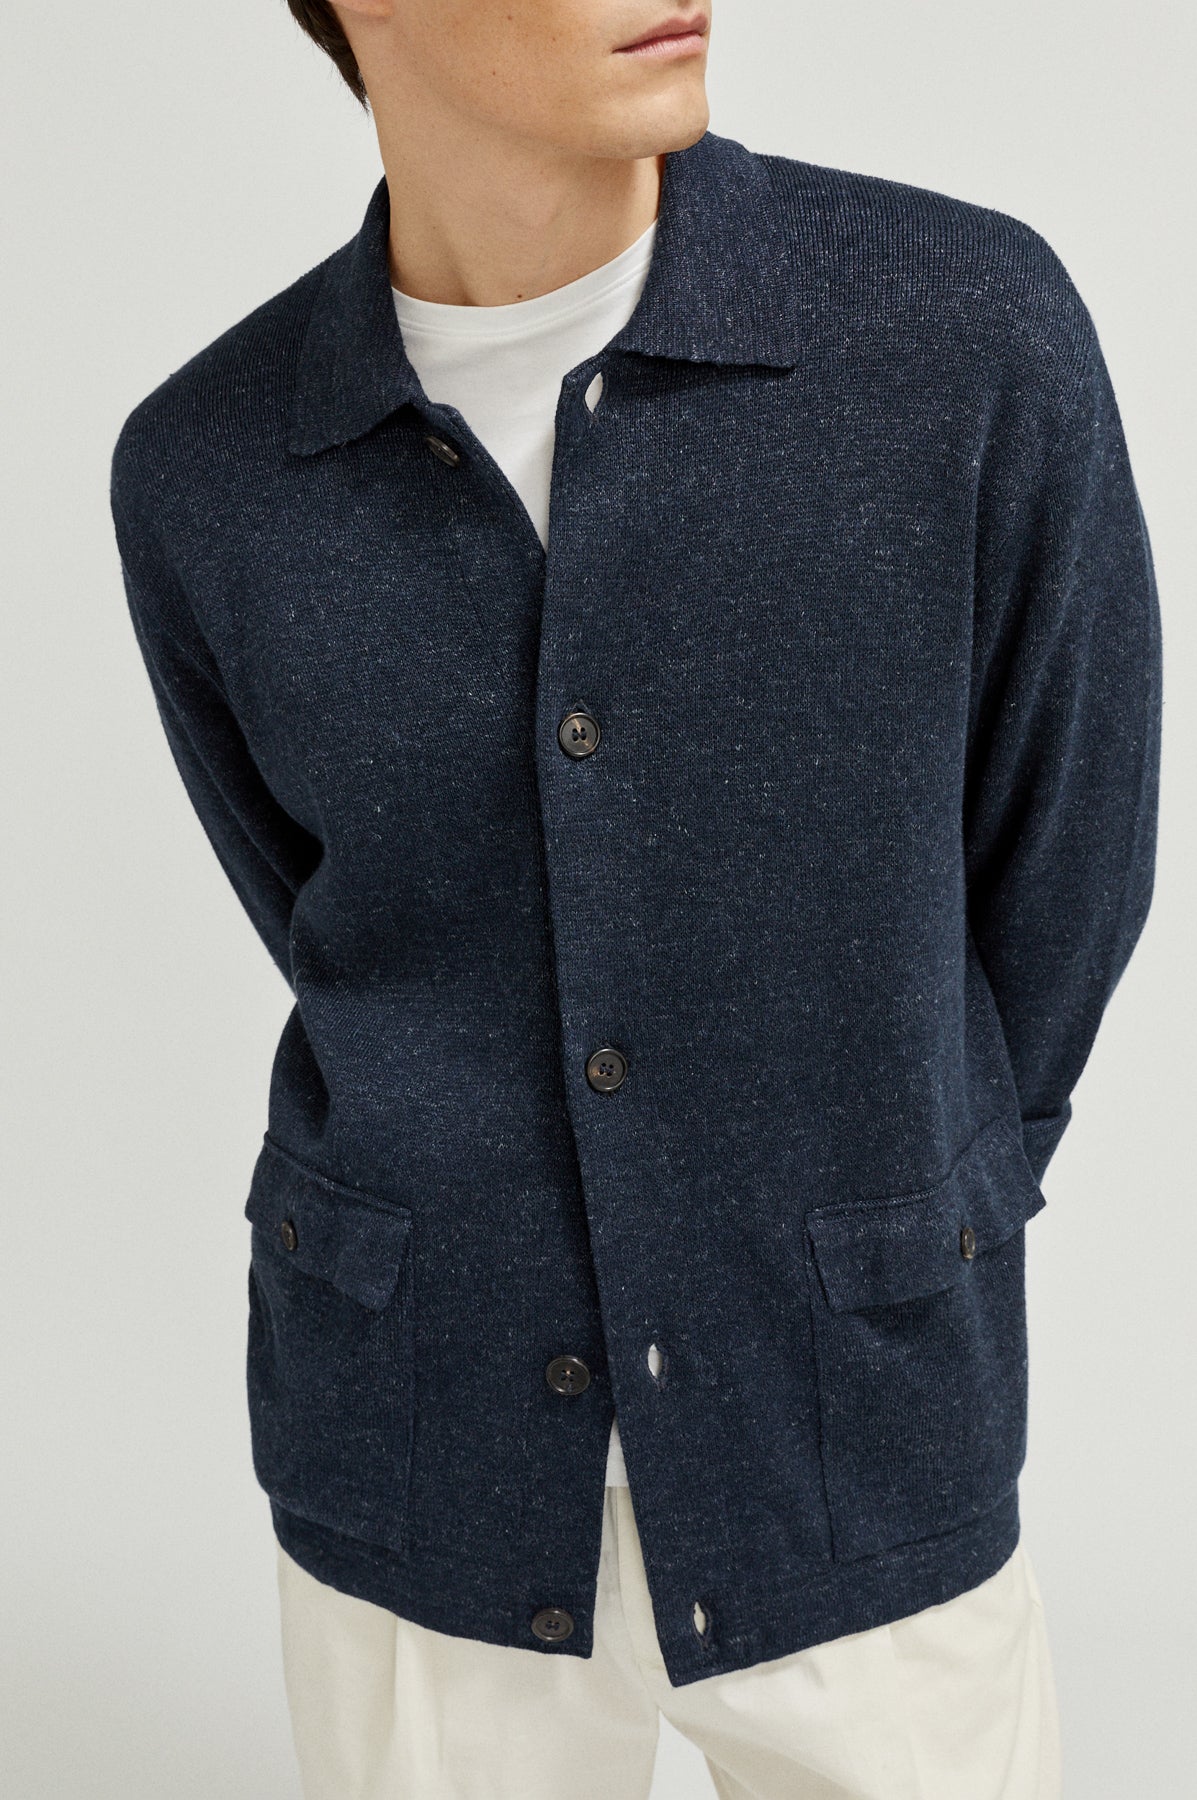 the linen cotton jacket denim